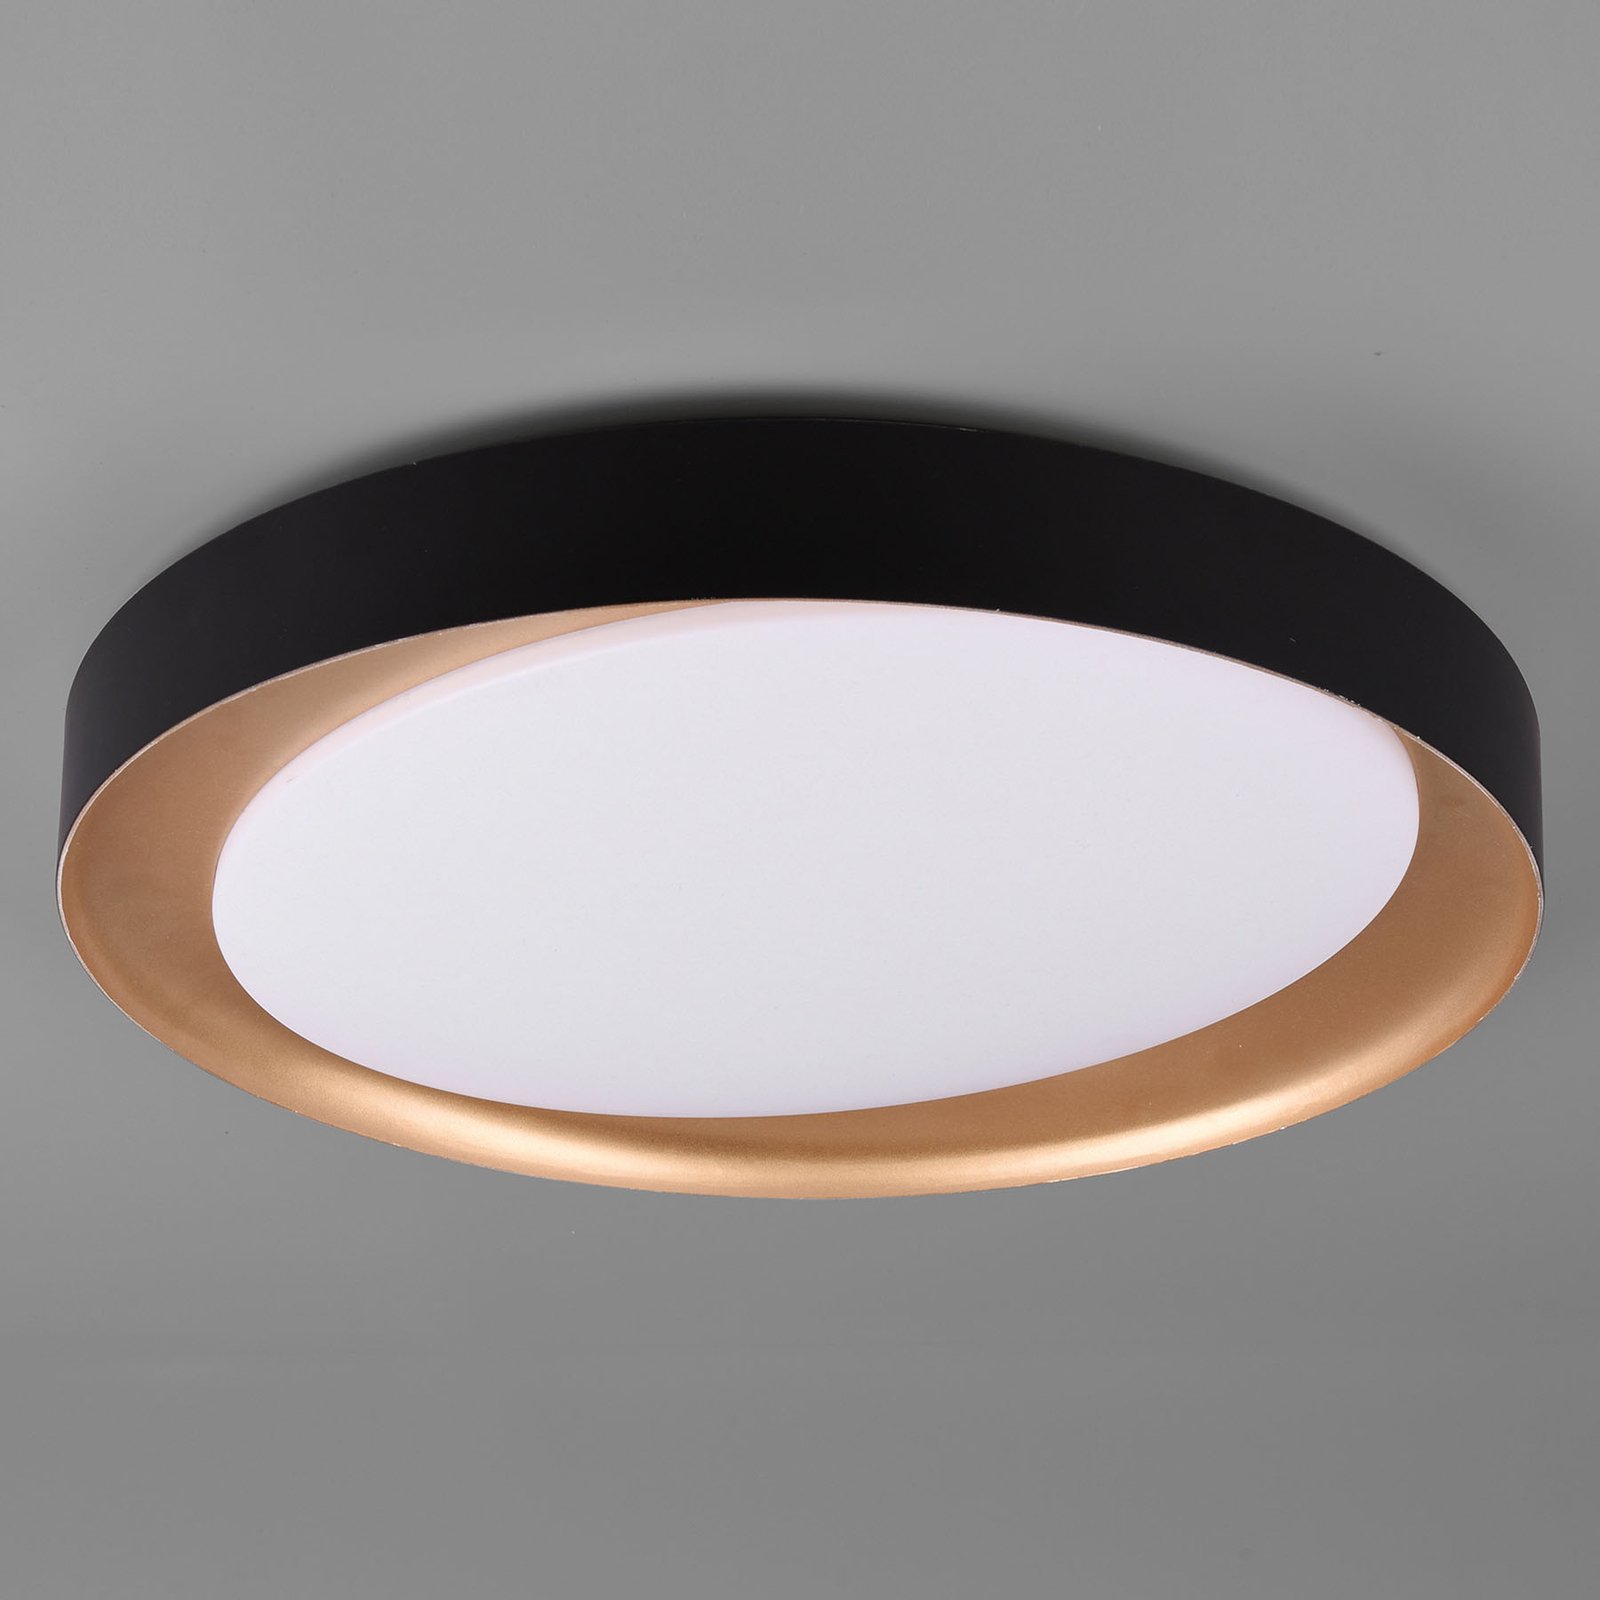 Plafón LED Zeta tunable white, negro/oro